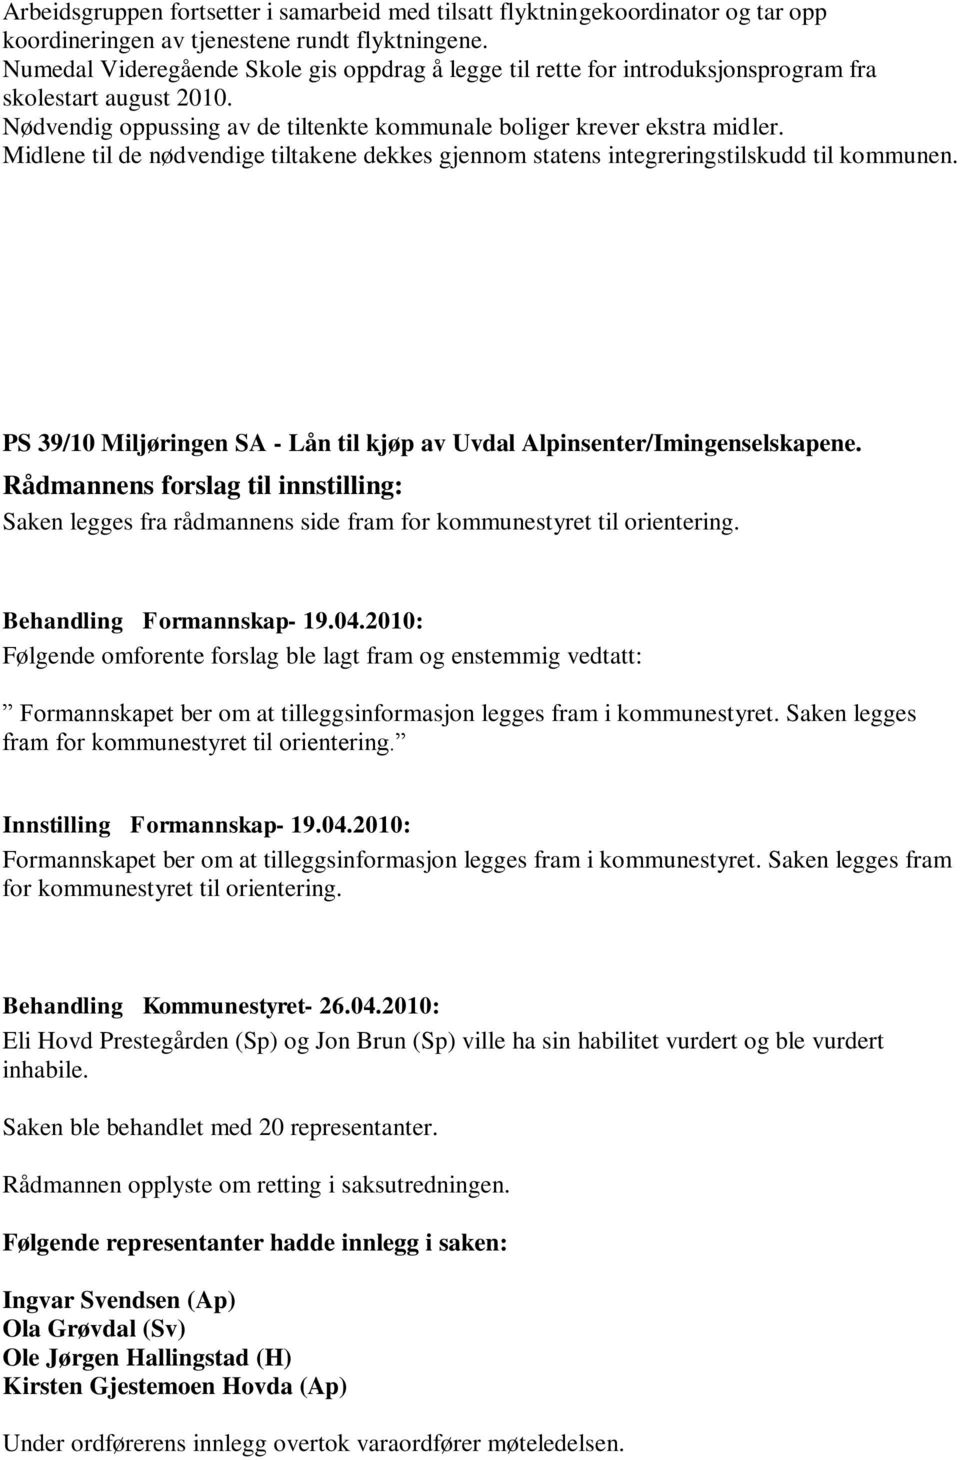 Midlene til de nødvendige tiltakene dekkes gjennom statens integreringstilskudd til kommunen. PS 39/10 Miljøringen SA - Lån til kjøp av Uvdal Alpinsenter/Imingenselskapene.